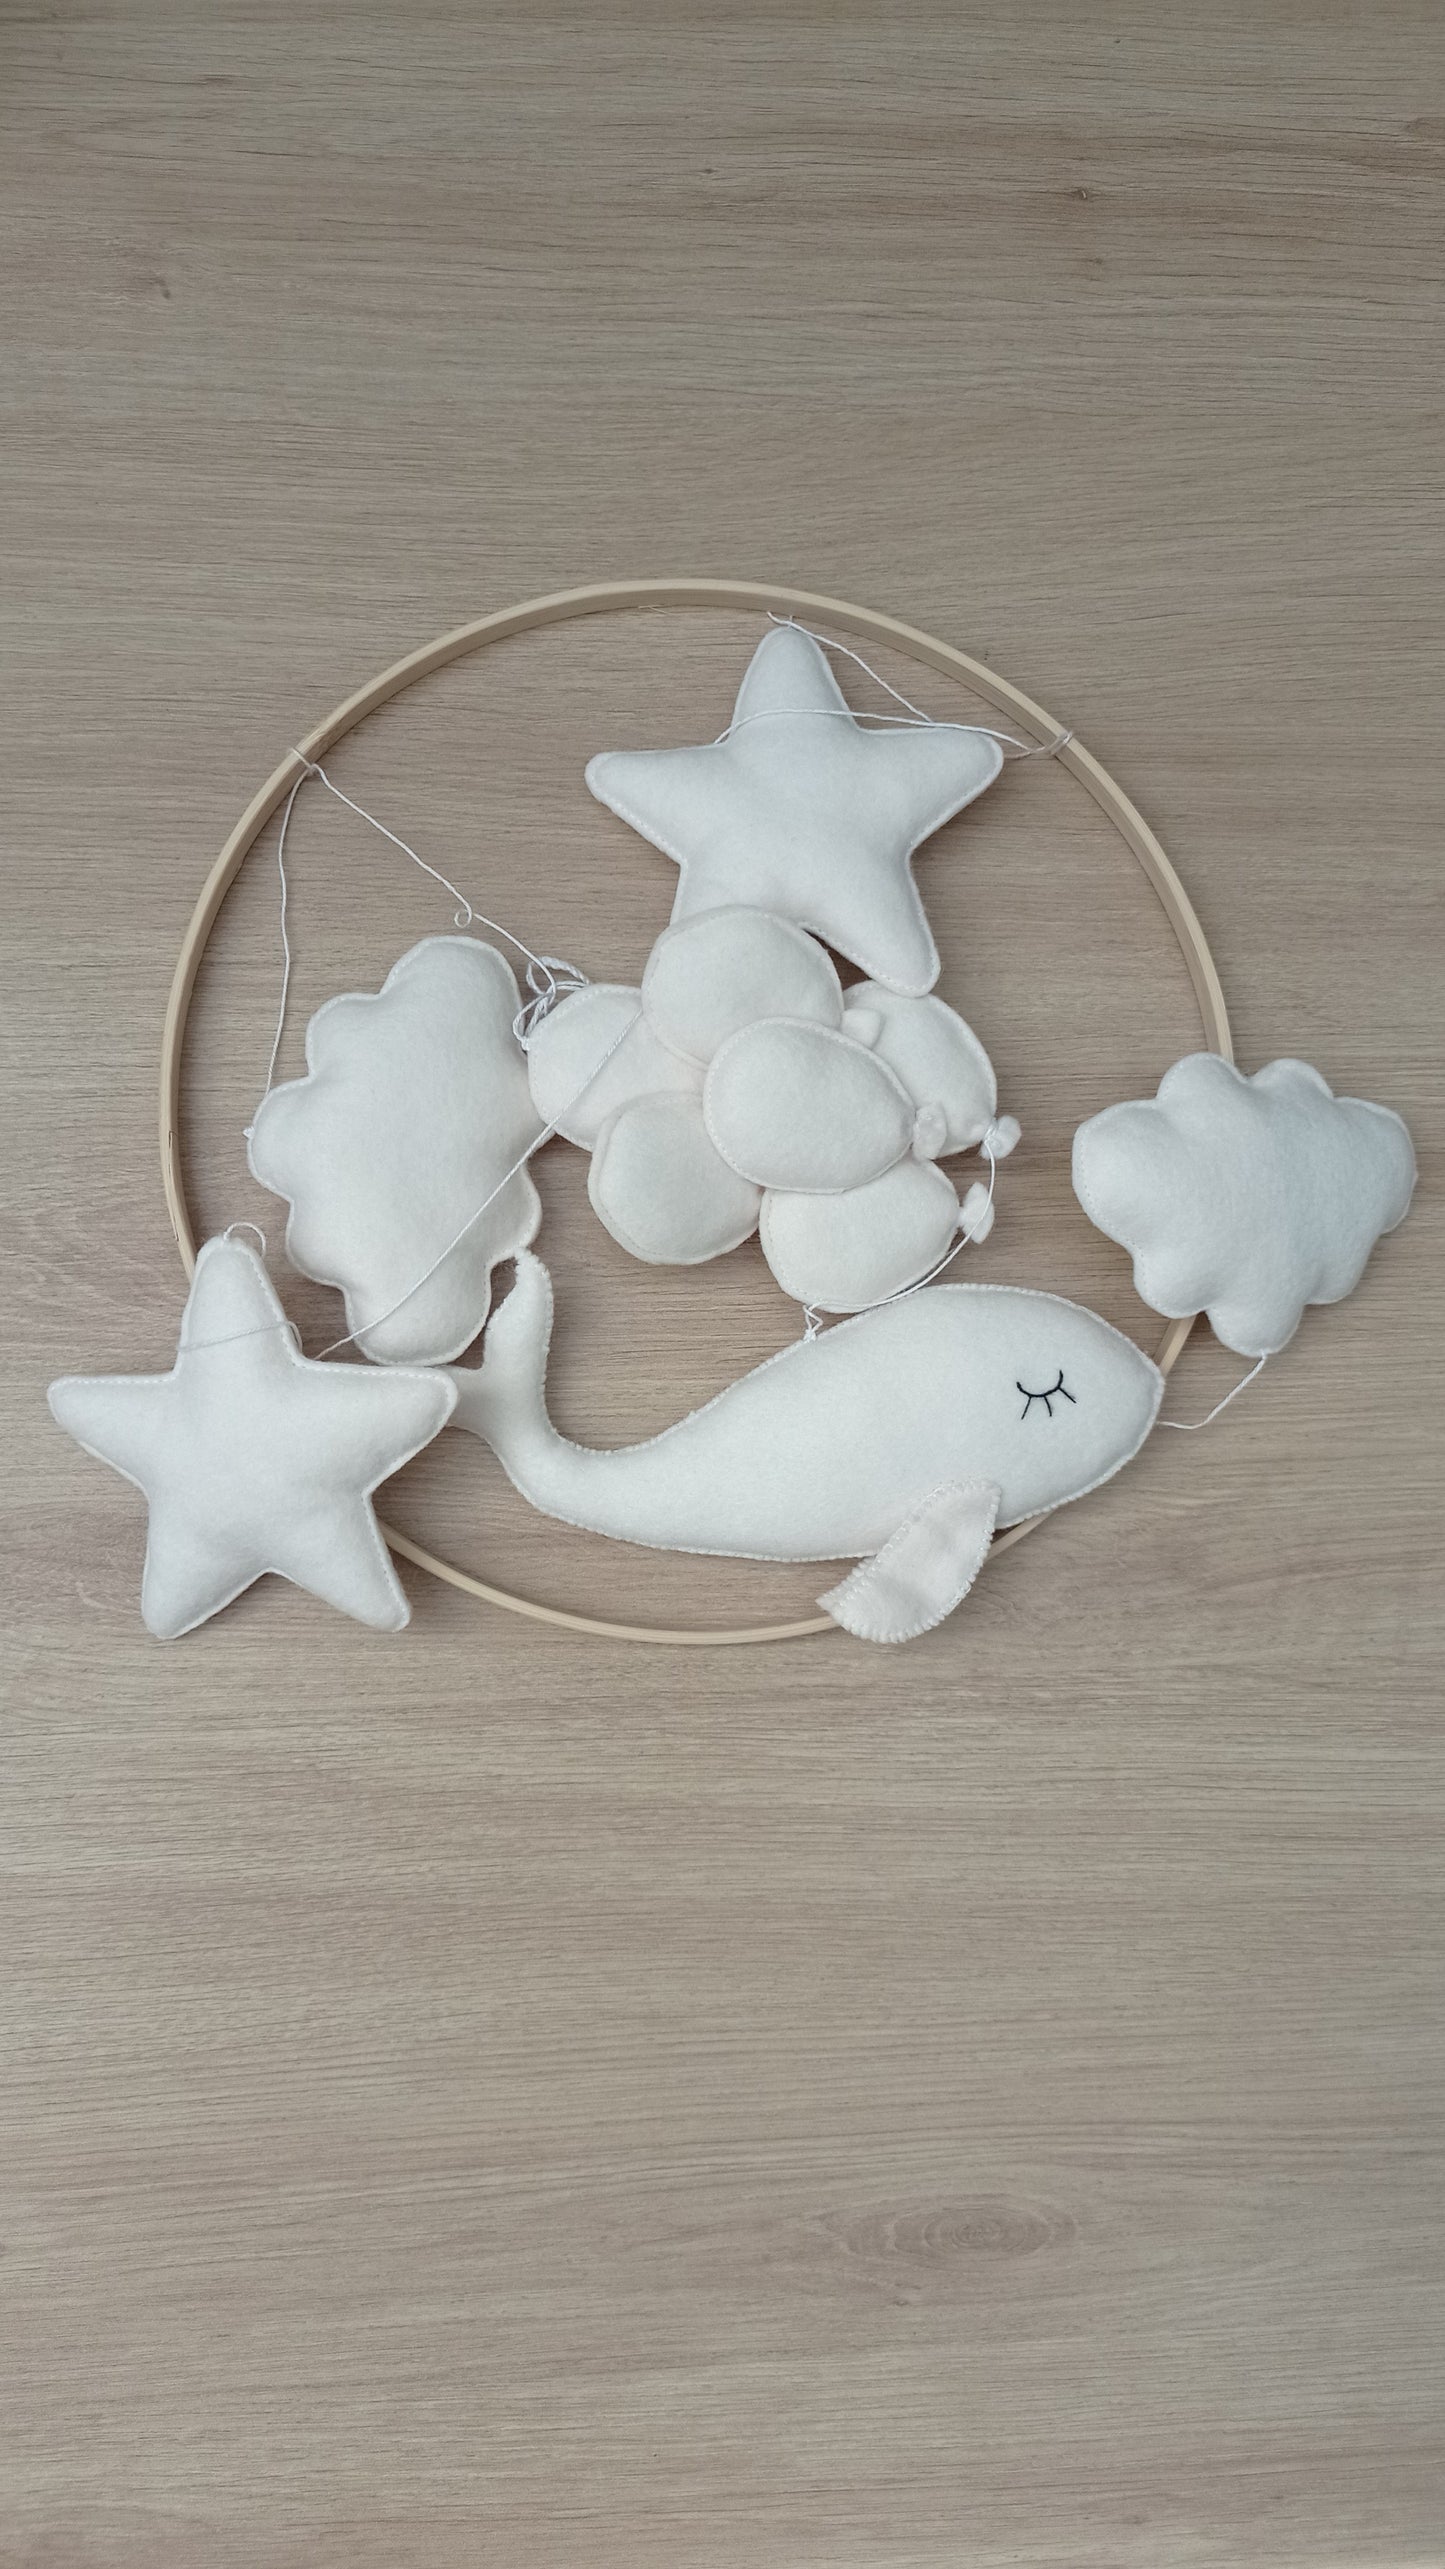 Baleine blanche, ballons, étoiles et nuages en feutrine pour mobile bébé.